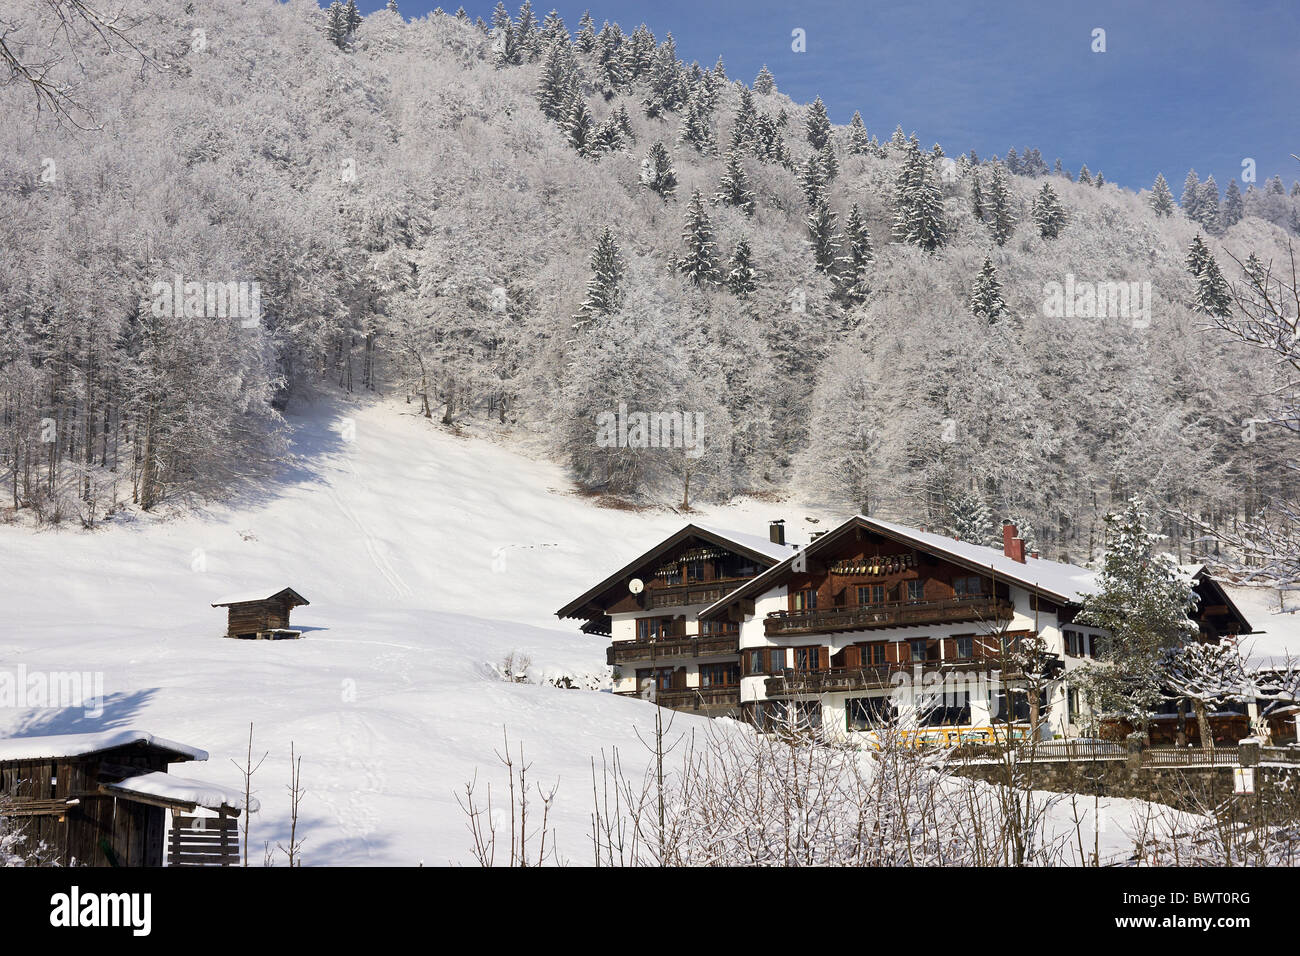 Winter landscape in the Allgaeu Alps Stock Photo